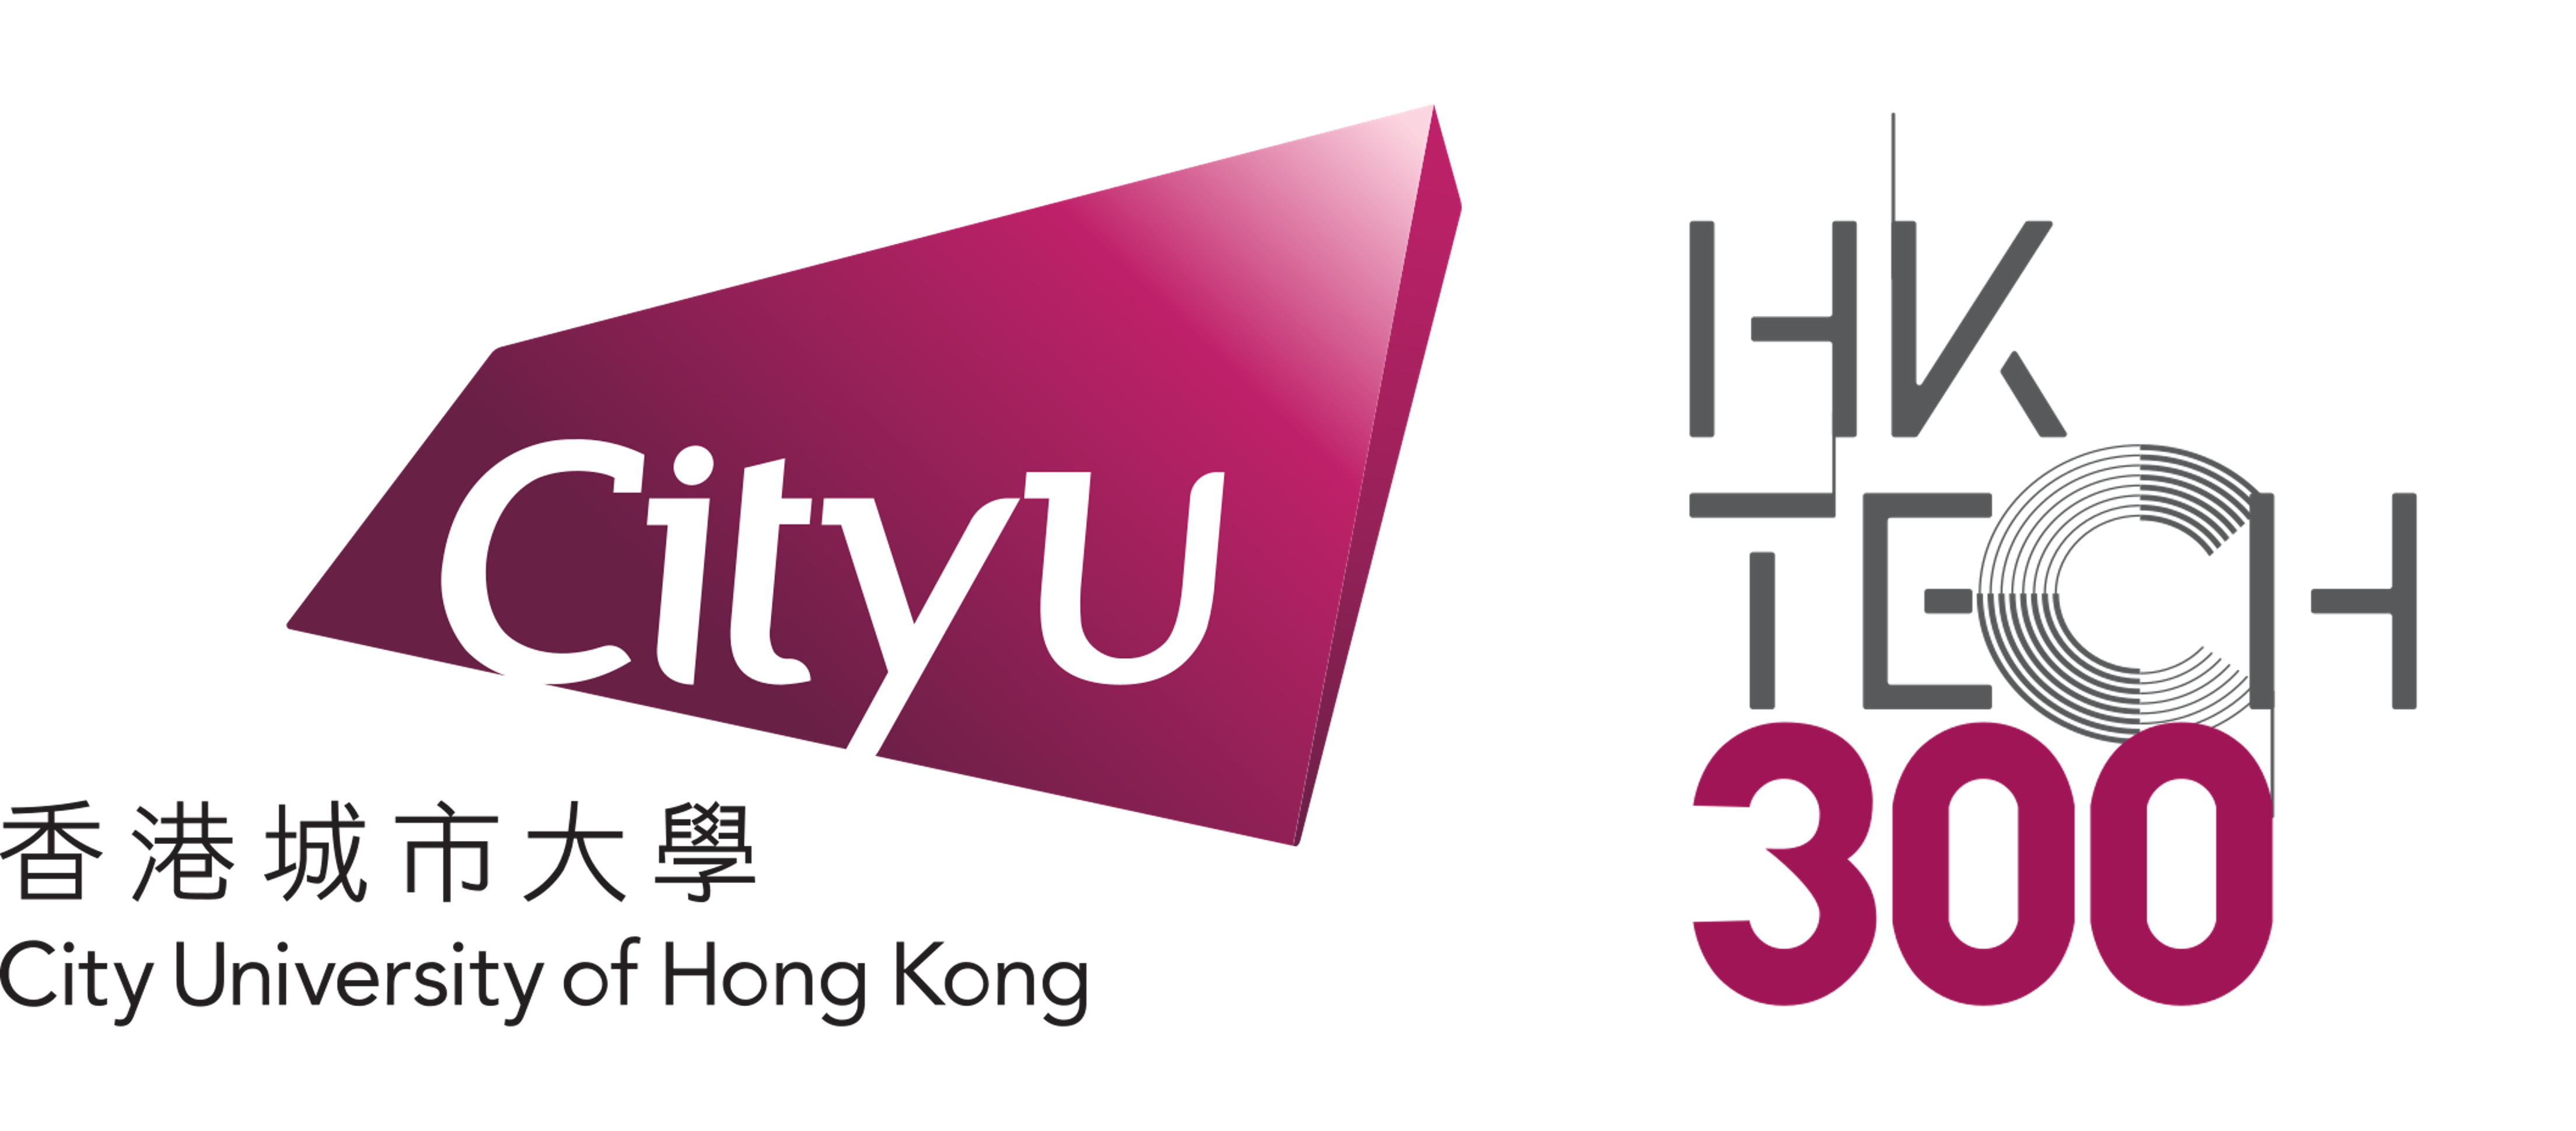 香港城市大學 HK TECH 300 天使基金